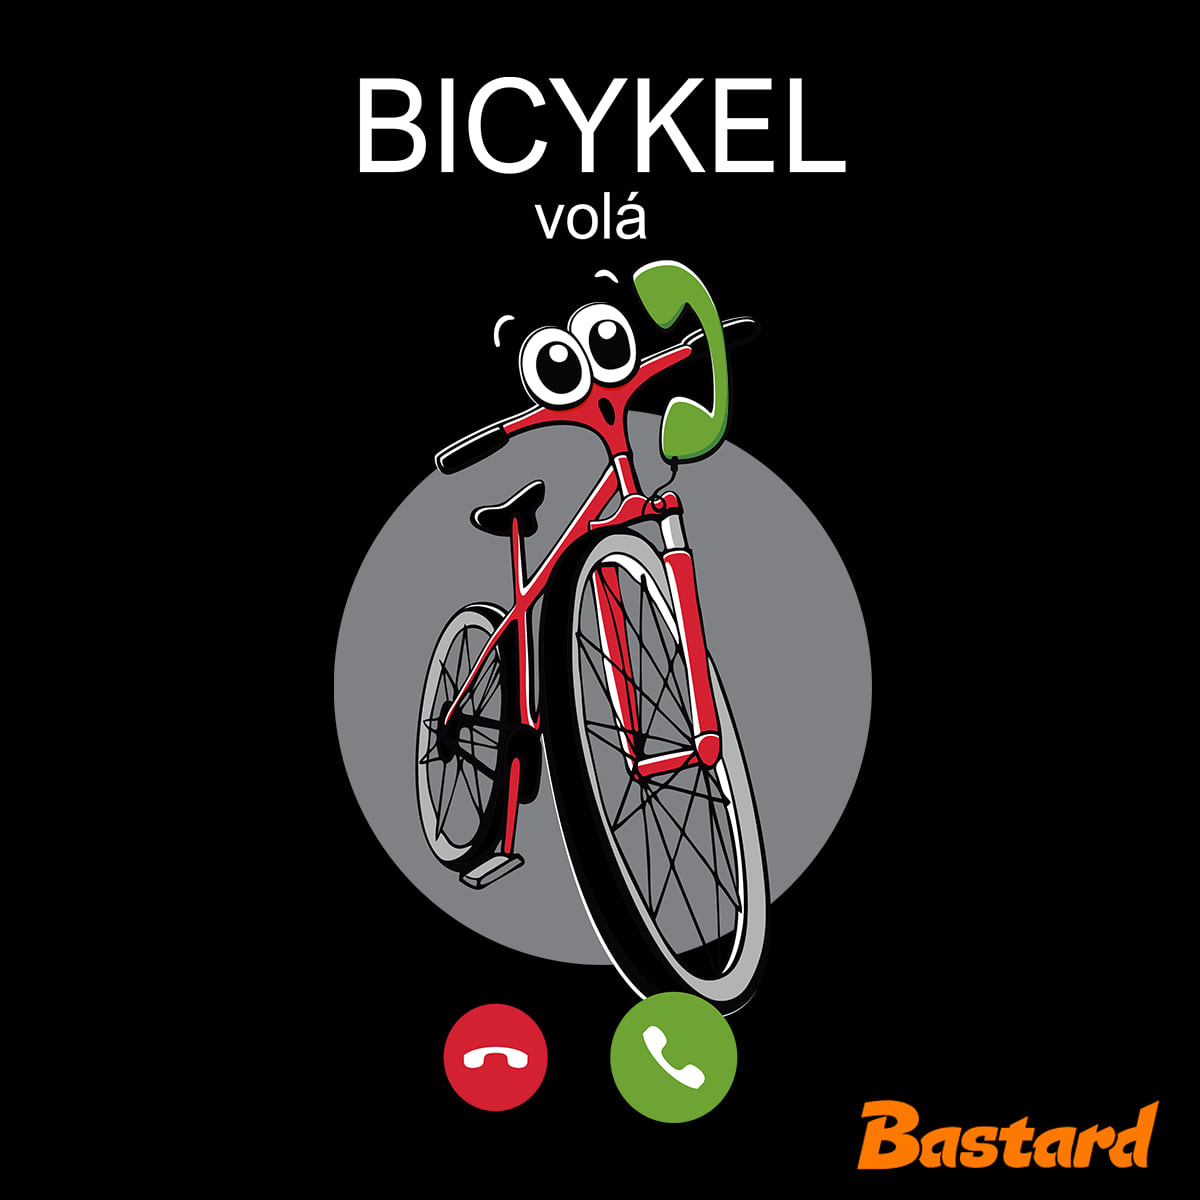 Bicykel volá